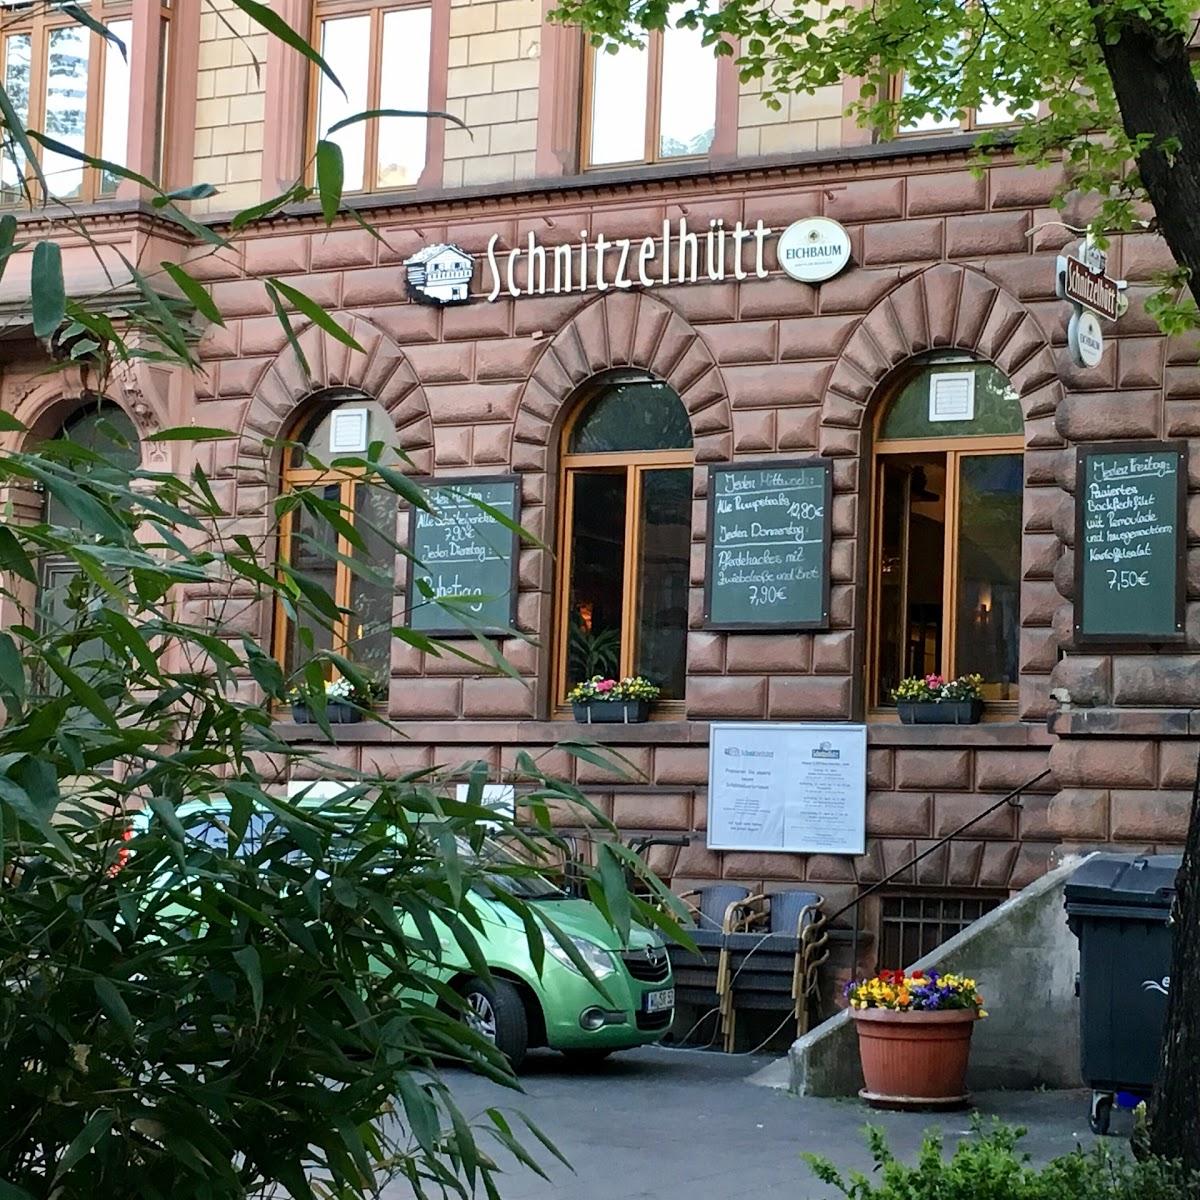 Restaurant "Schnitzelhütt" in  Worms